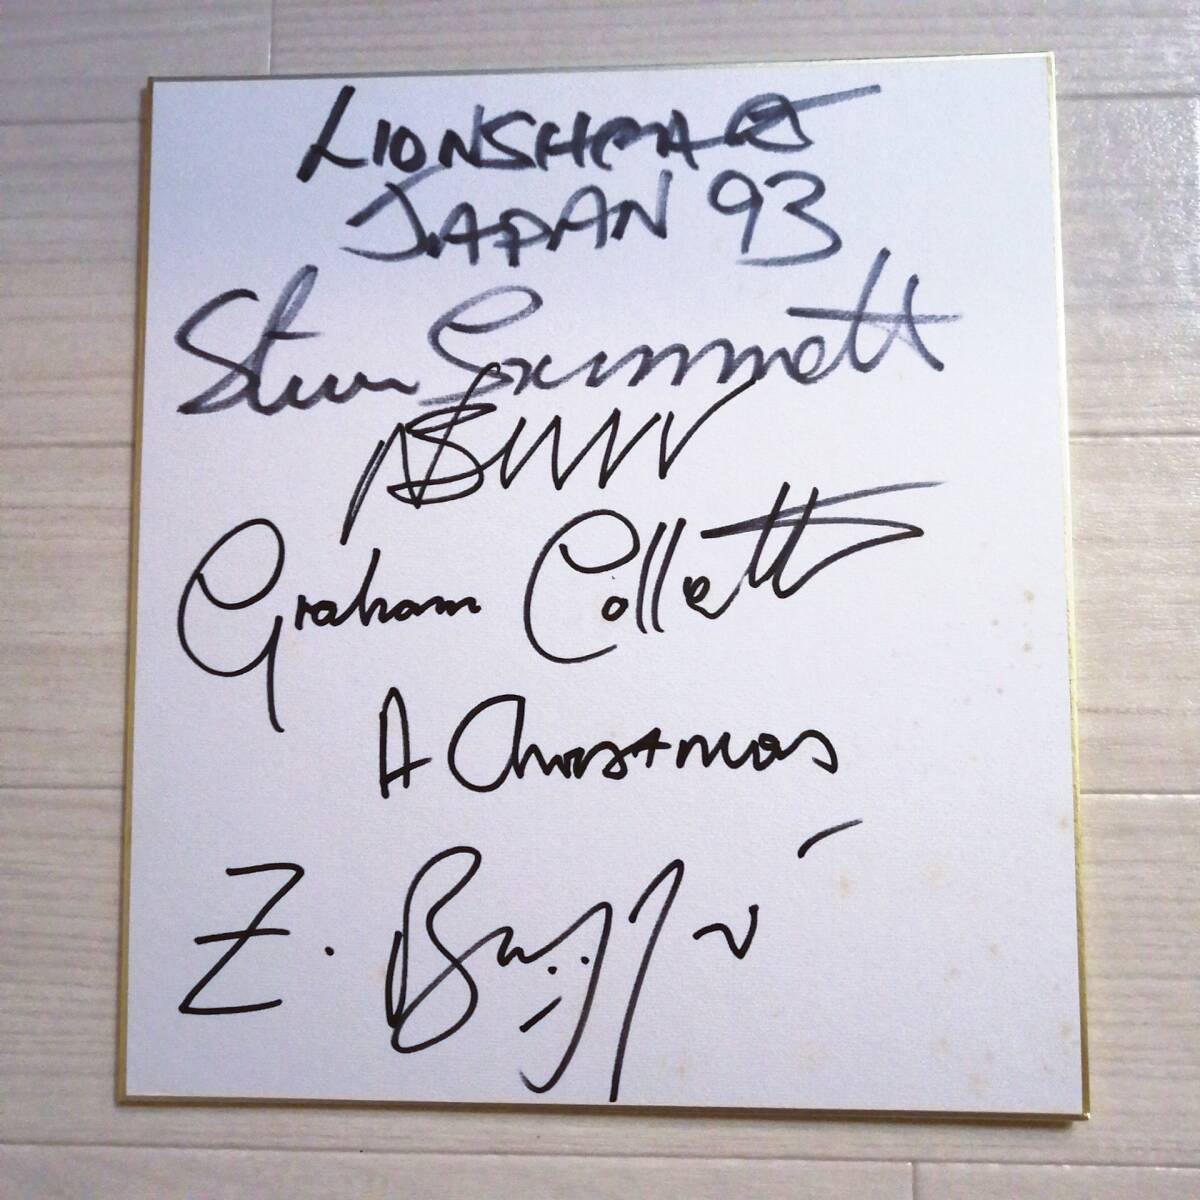  лев z Heart с автографом карточка для автографов, стихов, пожеланий Lionsheart JAPAN 93 товары 